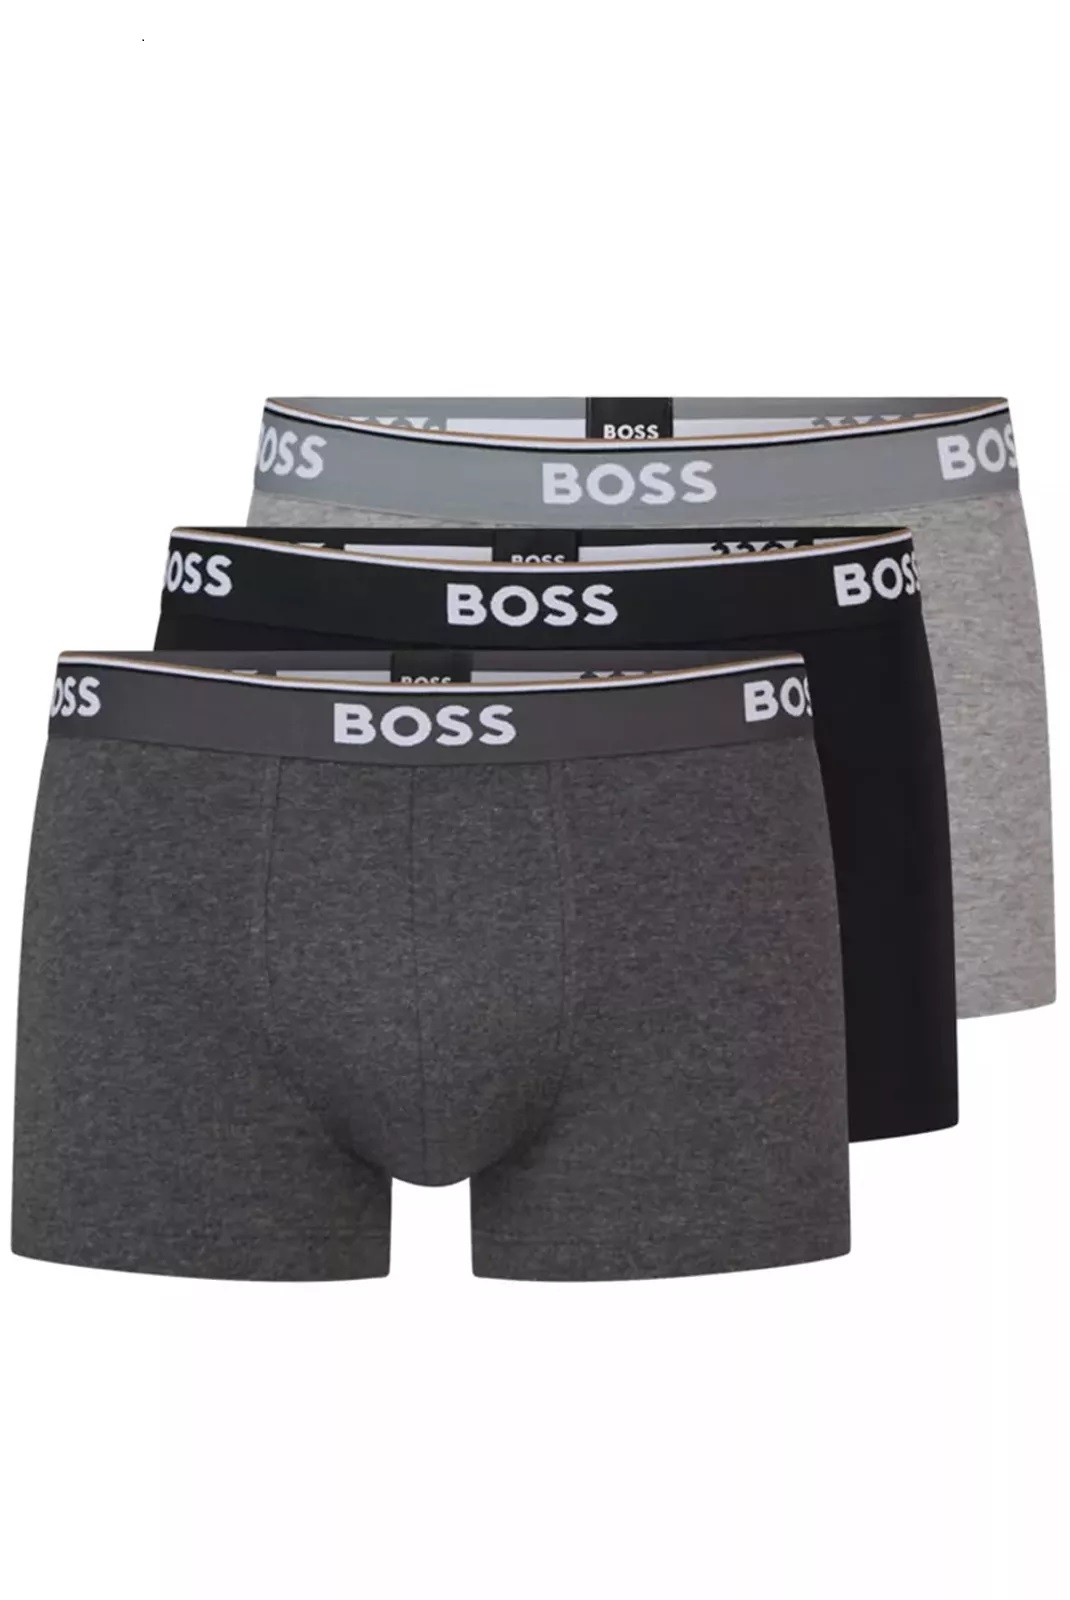 Hugo Boss pánské boxerky 3pack černé a šedé Velikost: M